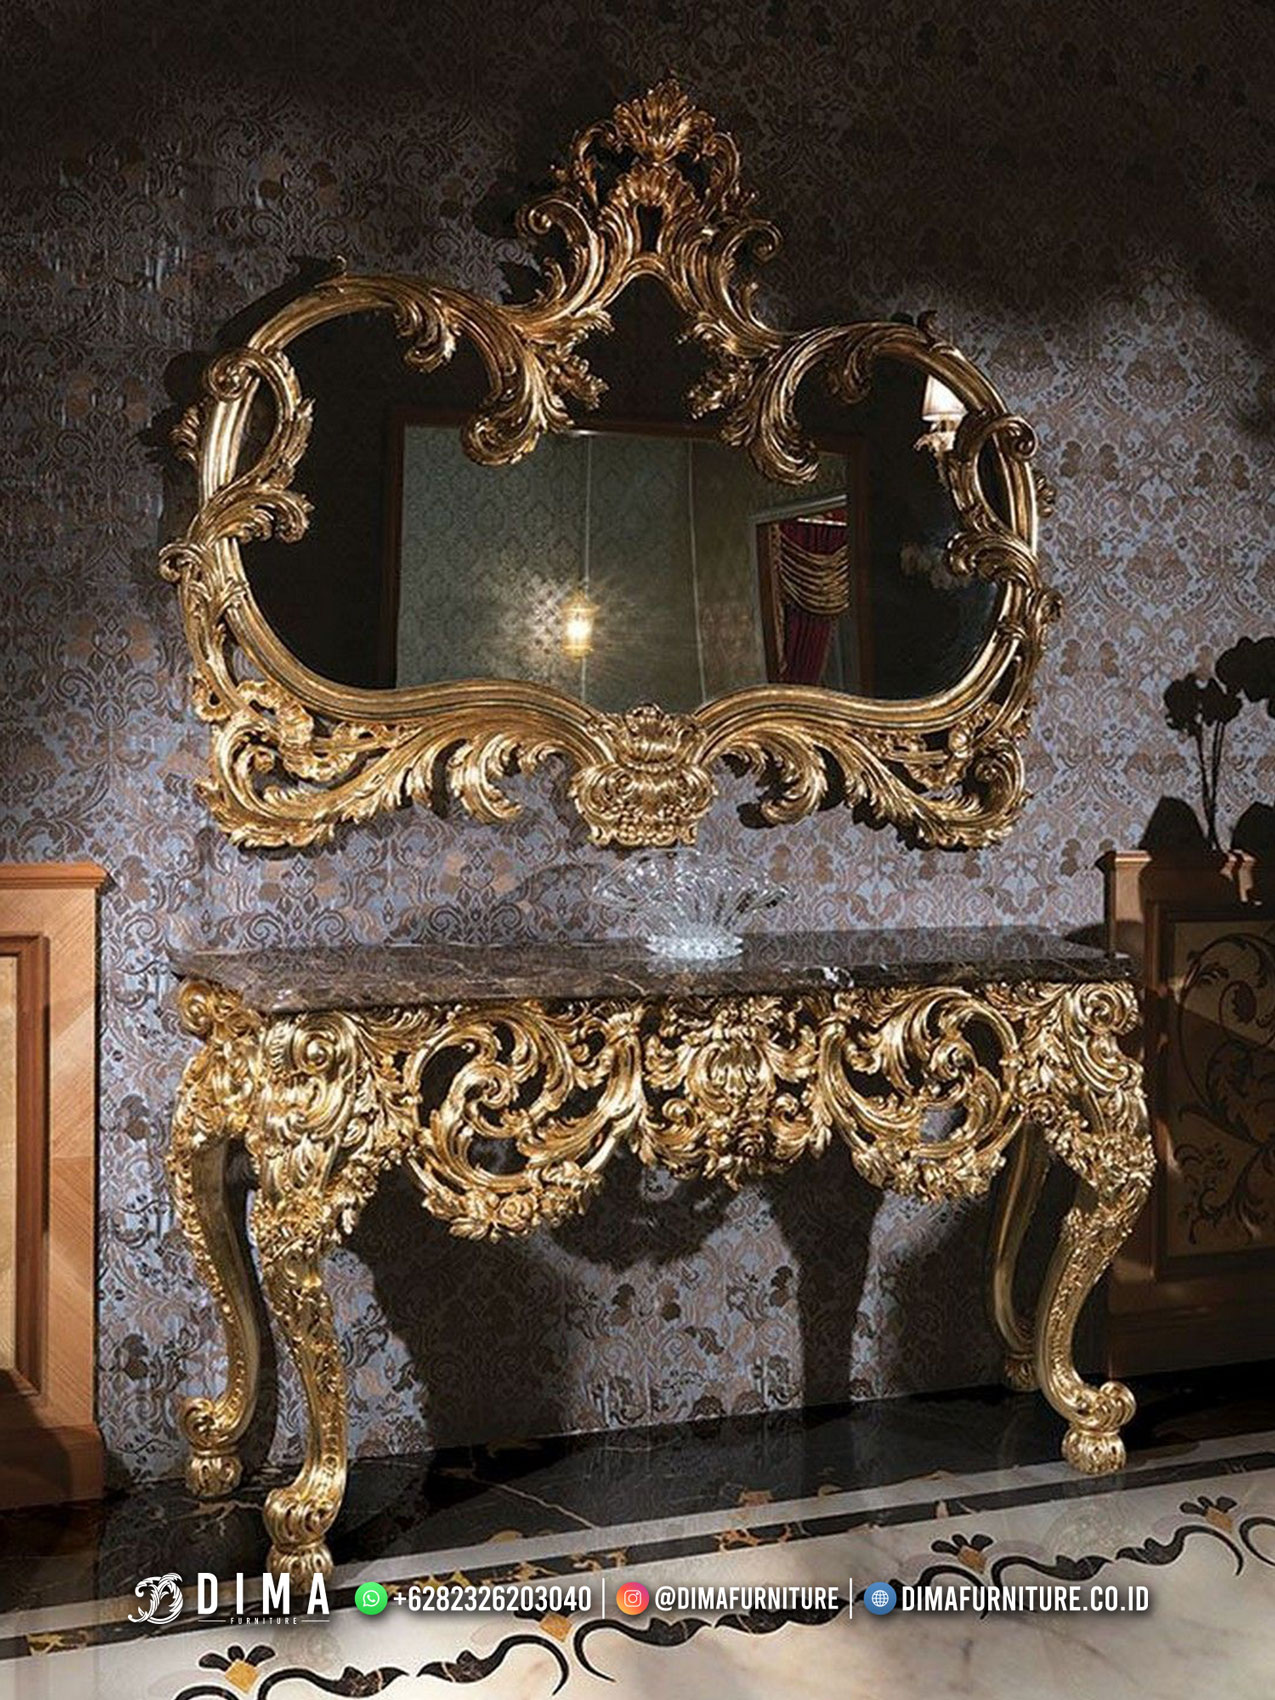 Furniture Jepara Meja Hias Konsul Dengan Ukiran Mewah Harga Terbaik ST-1751